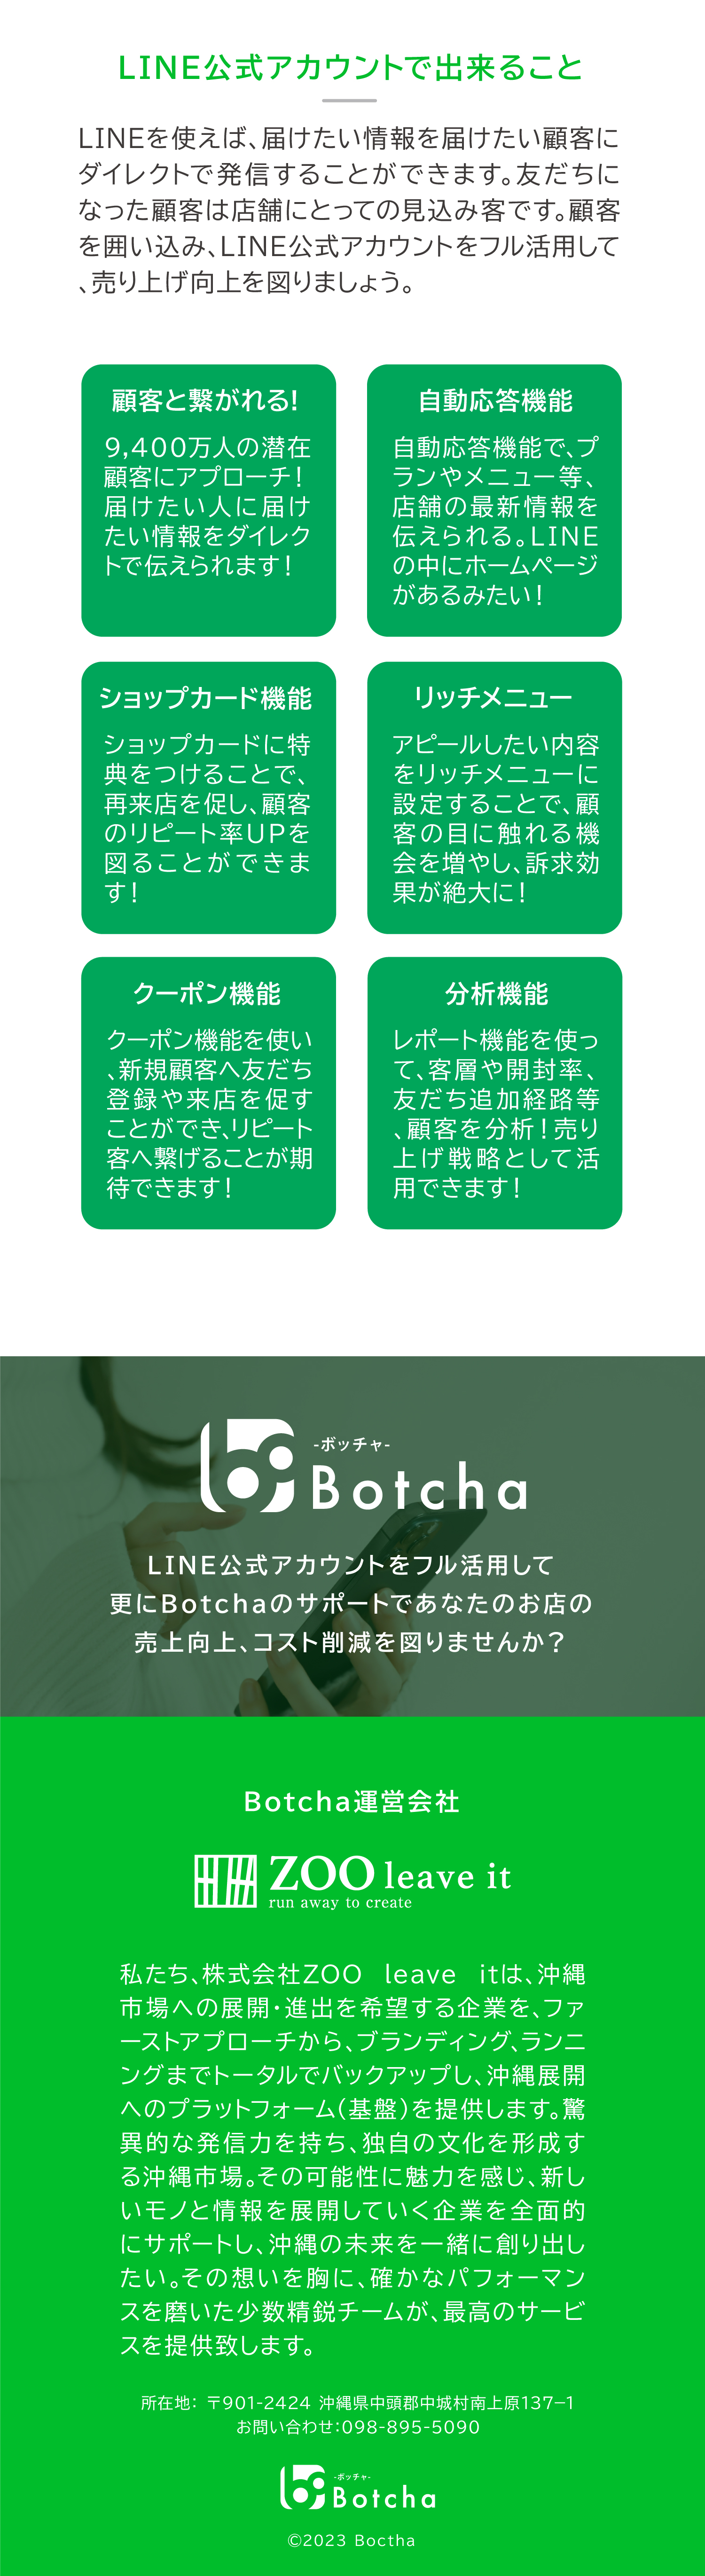 ボッチャはお店の今の公式LINEのもったいないを解決するサービス。便利な予約機能やリピート顧客づくりをサポートします。